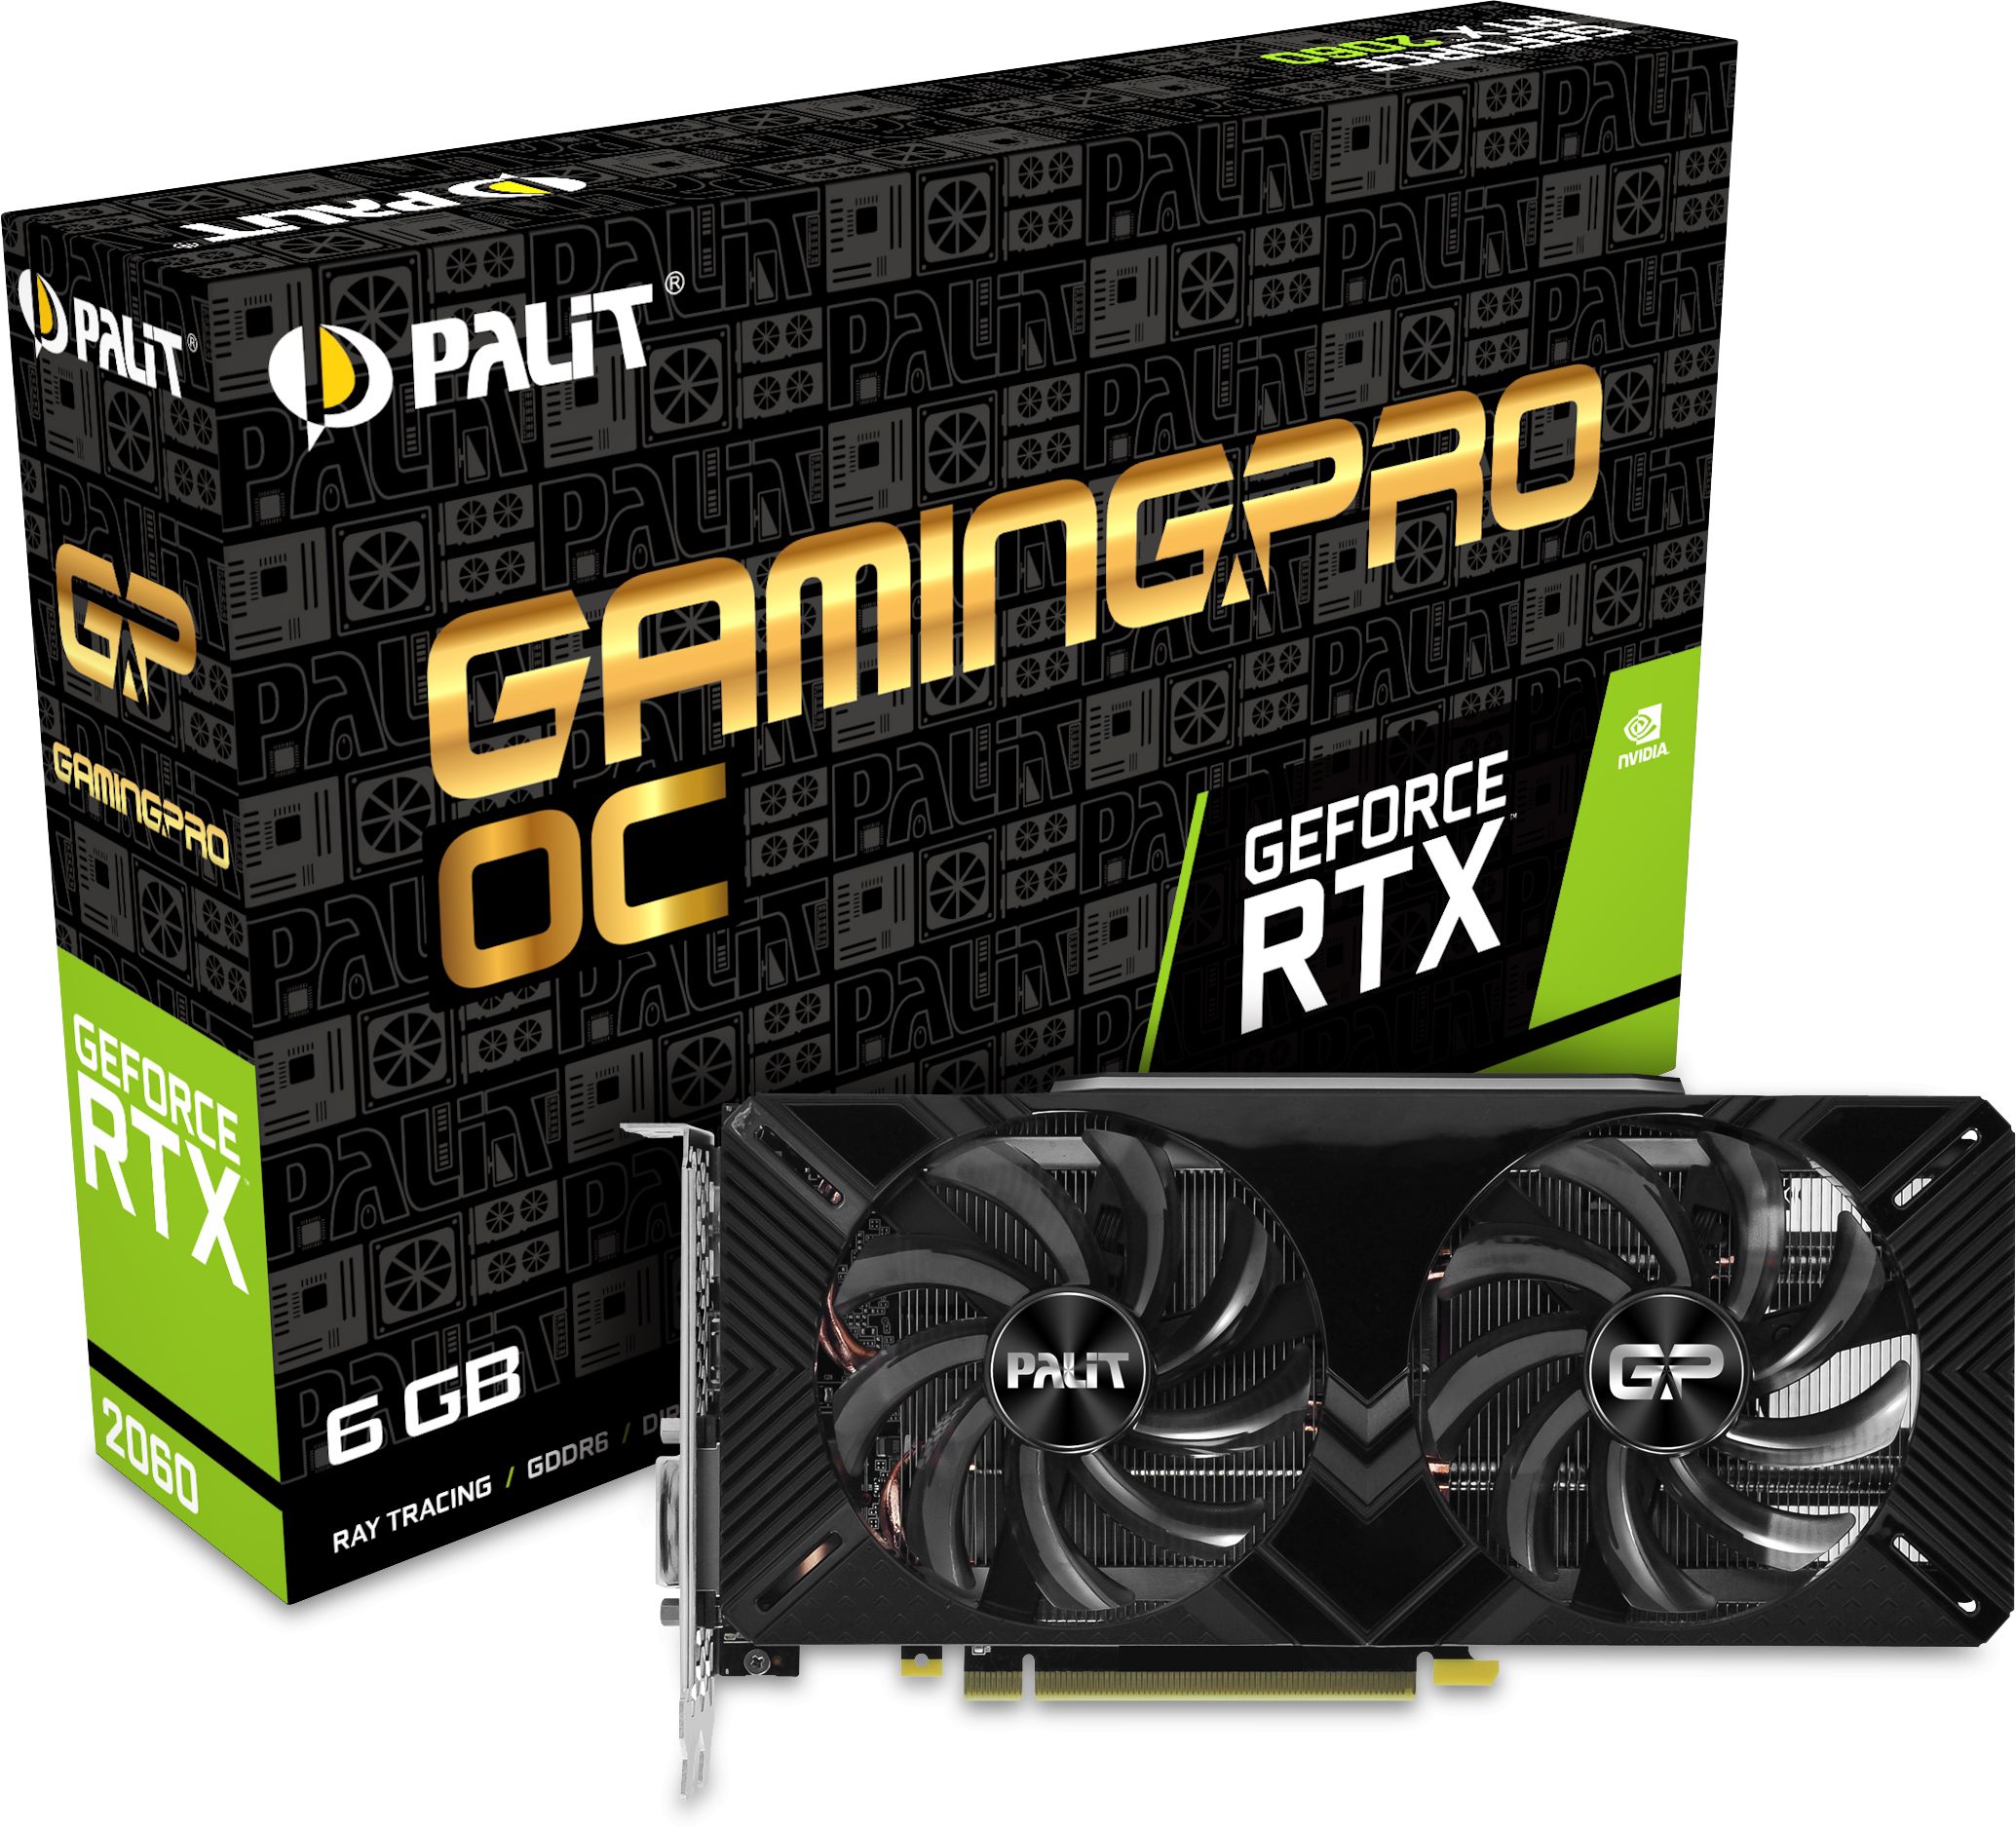 【ジャンク】Palit GeForce RTX 2060 GamingProPCパーツ